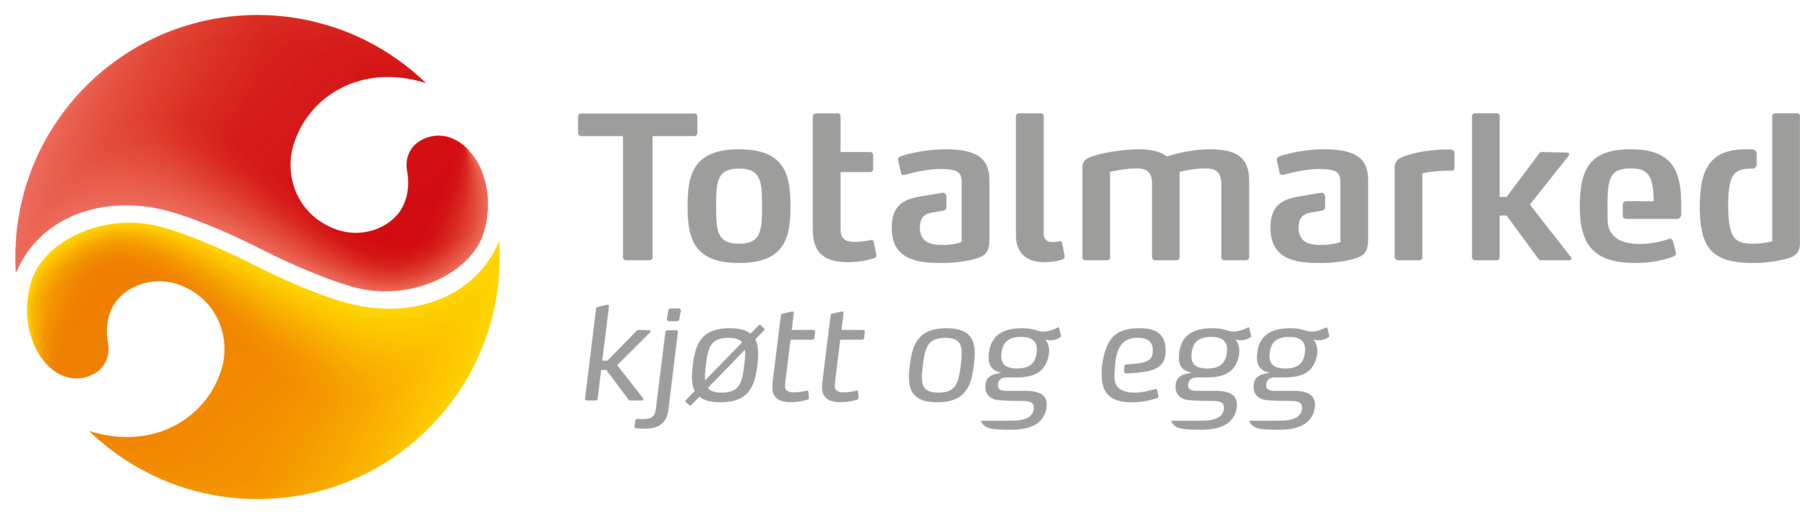 Logo Totalmarked kjøtt og egg